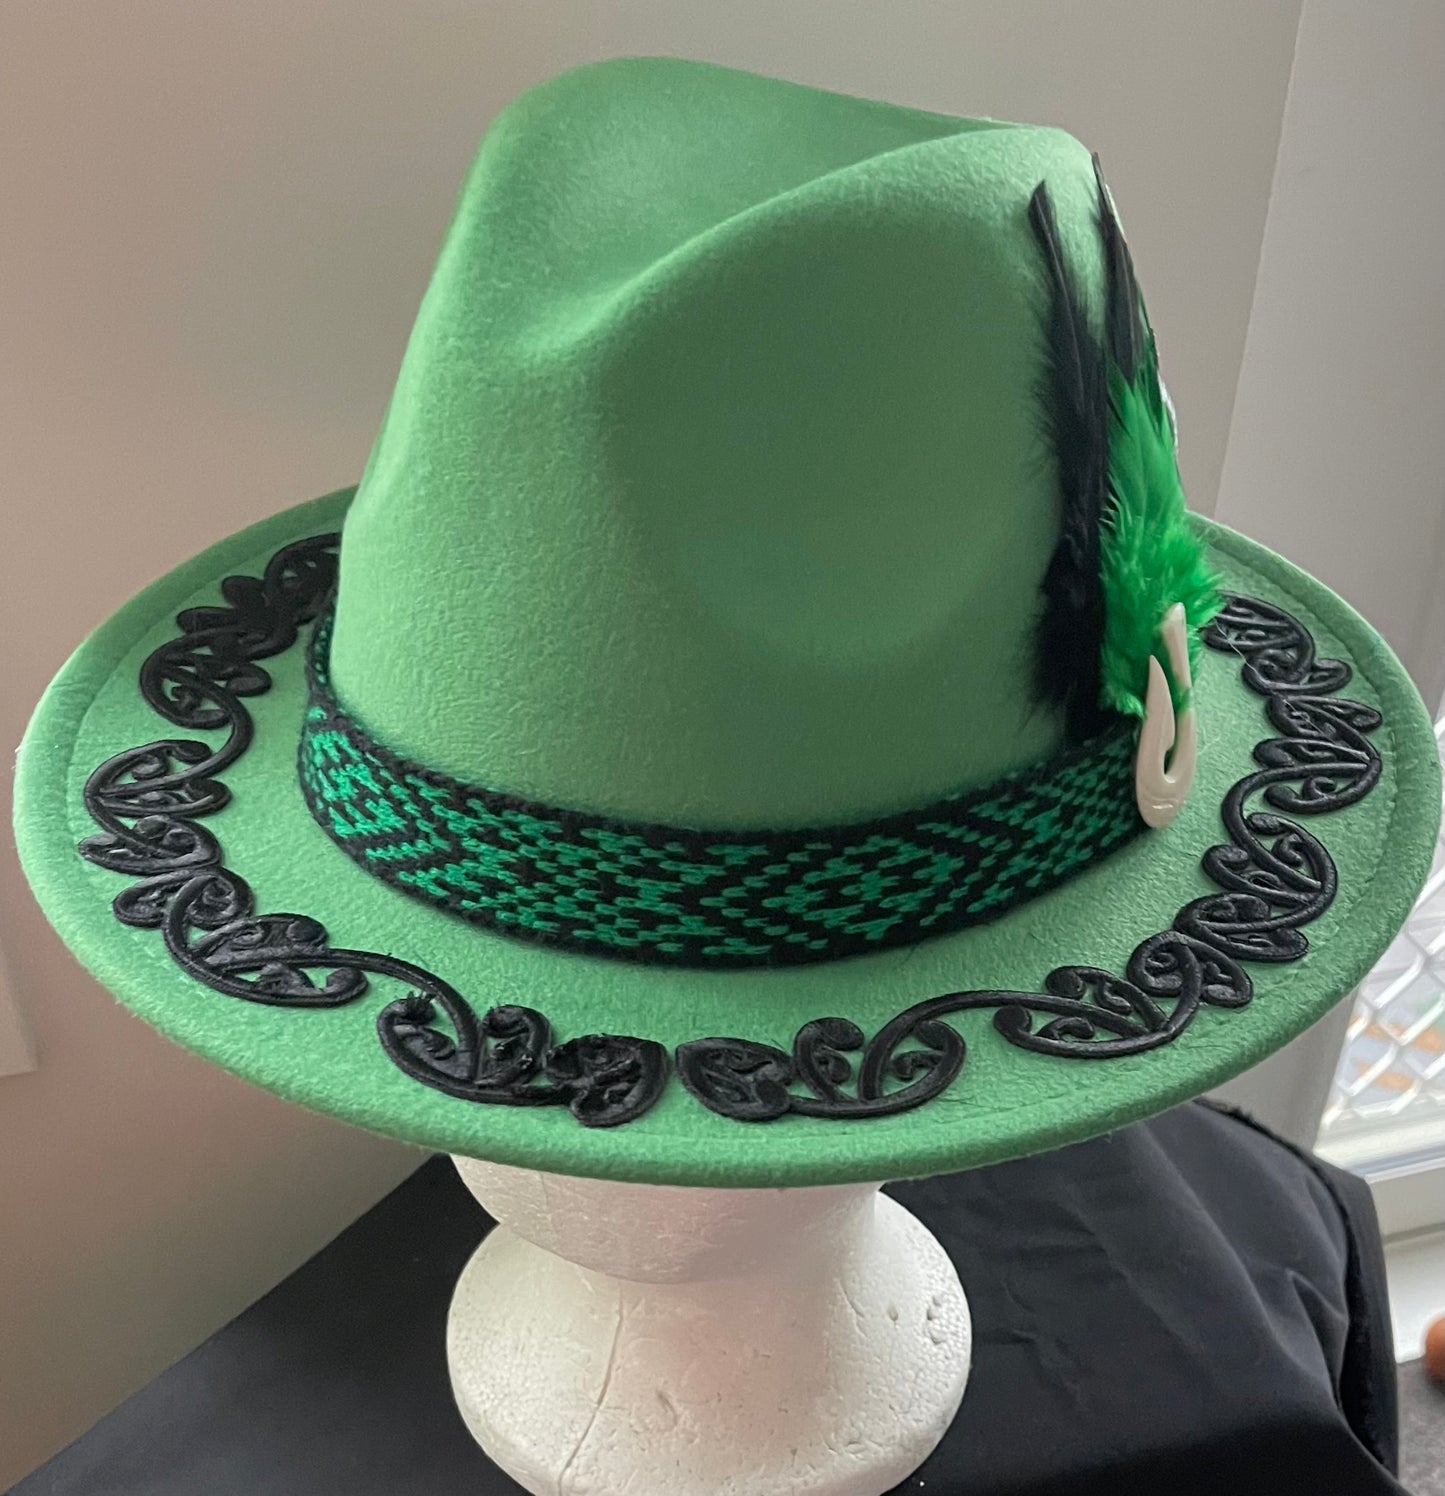 Potae - Emerald Fedora Felt Hat